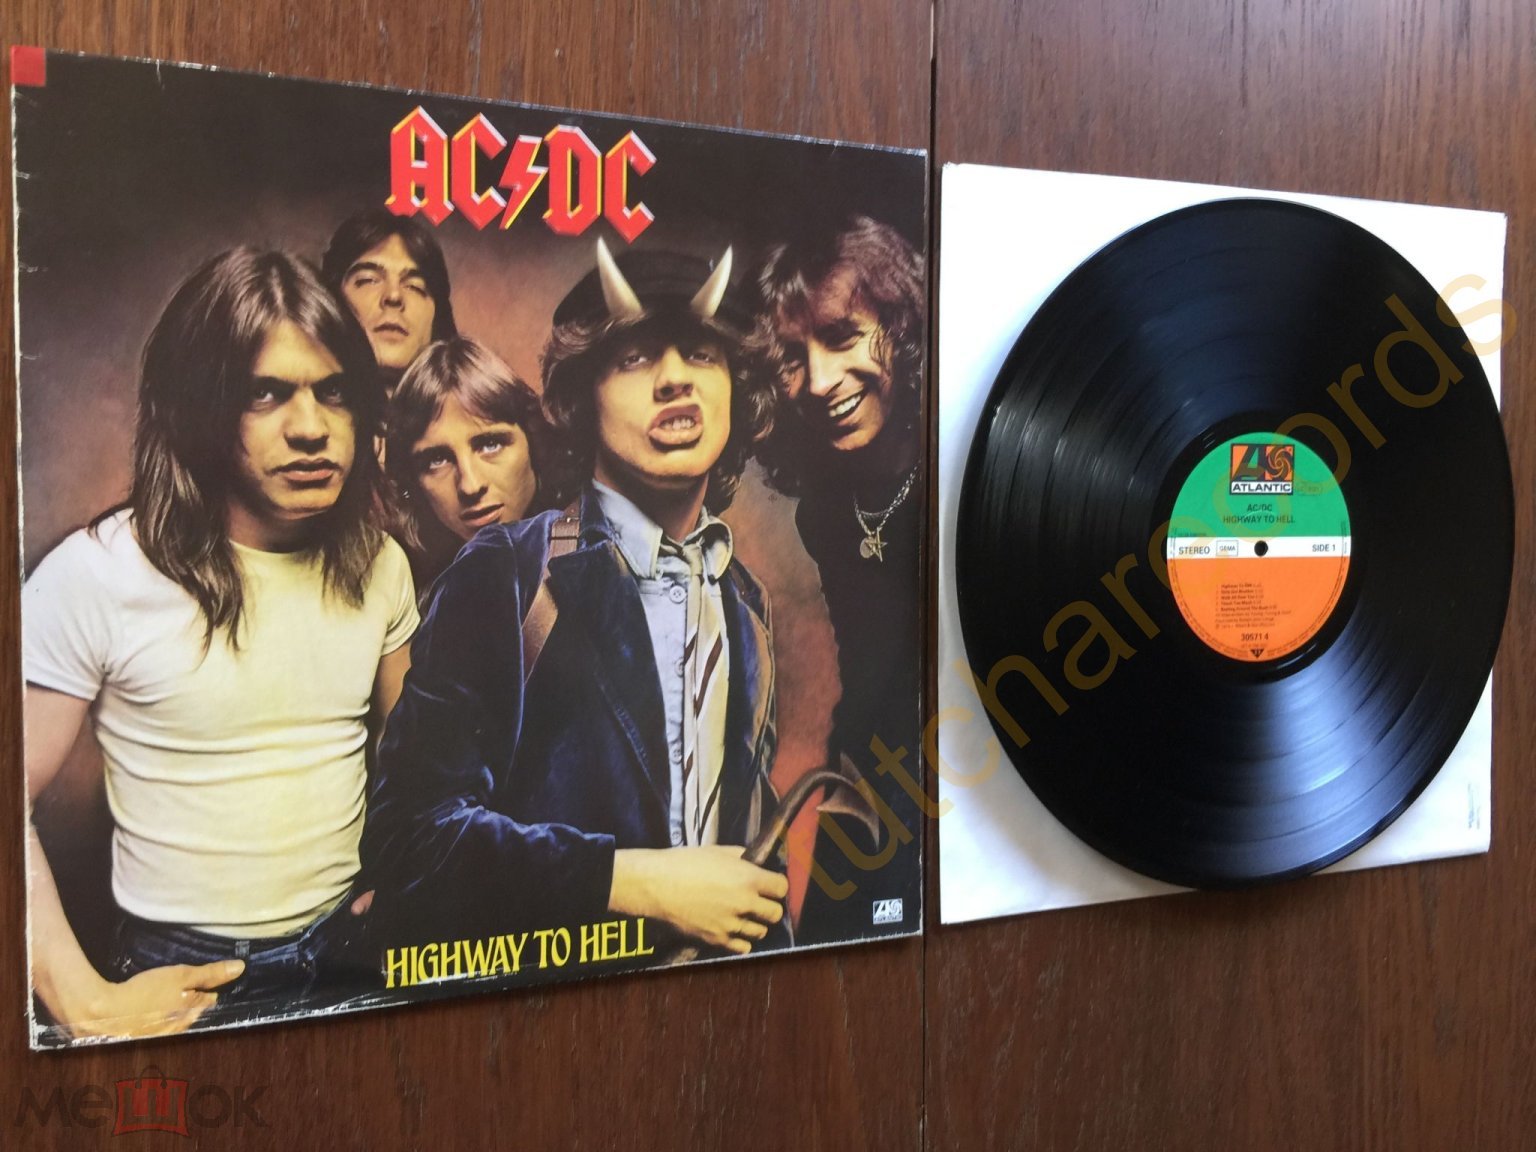 AC/DC – Highway Hell - LP - Atlantic – ATL 50 628 - ОРИГИНАЛ 1979 GERMANY MINT- от 1 руб (торги завершены #287855873)